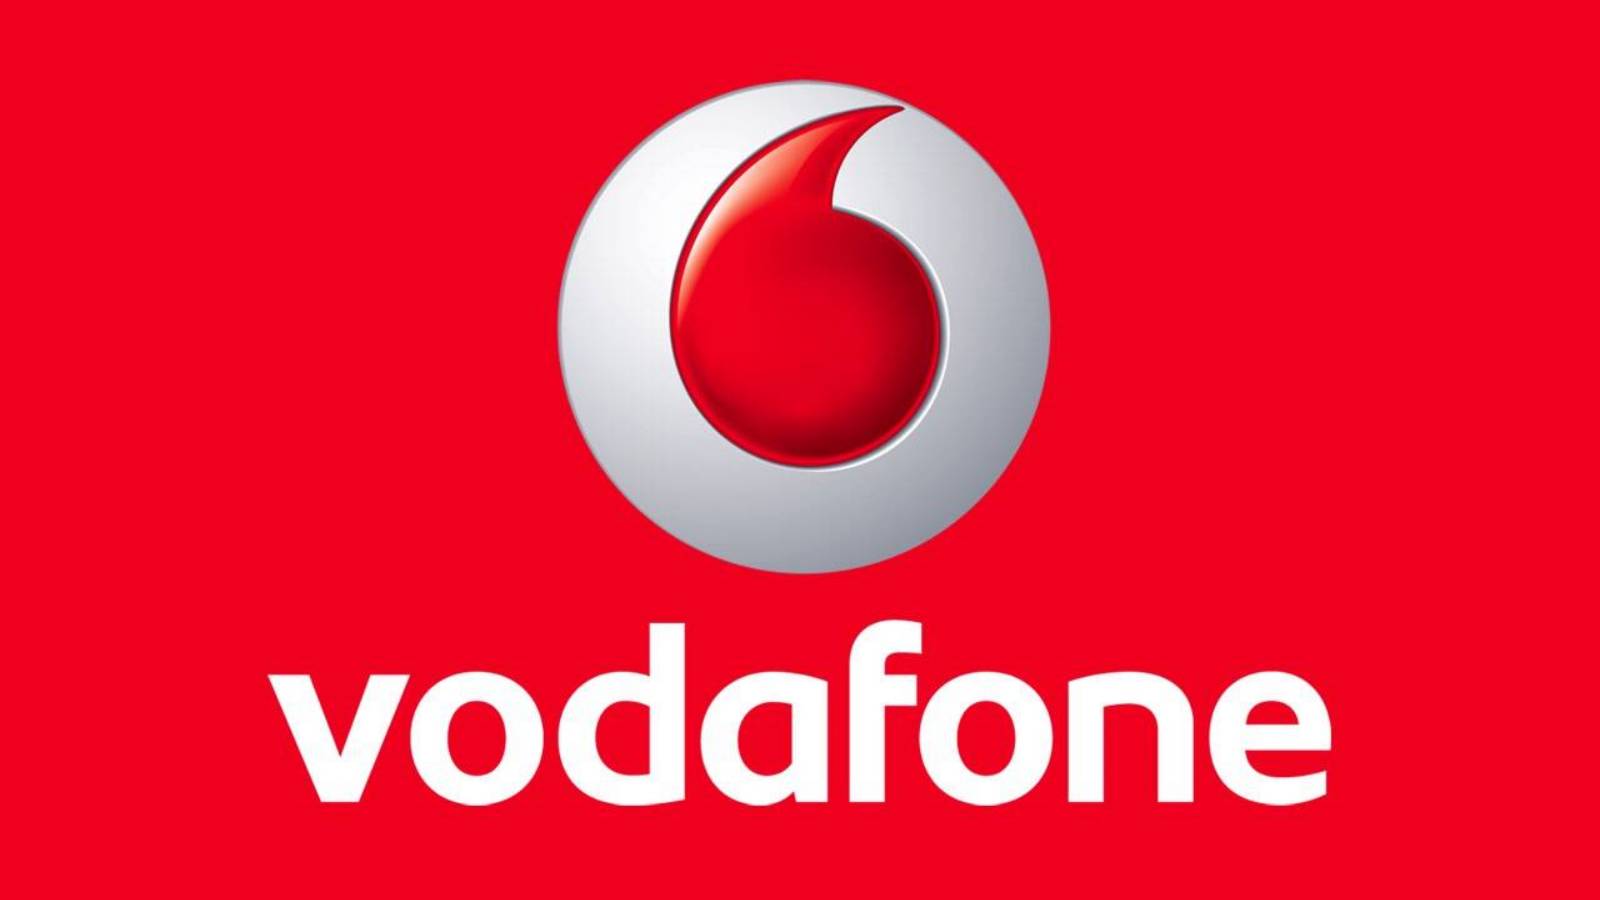 Vodafone officielle GRATIS MILLIONER af rumænske kunder